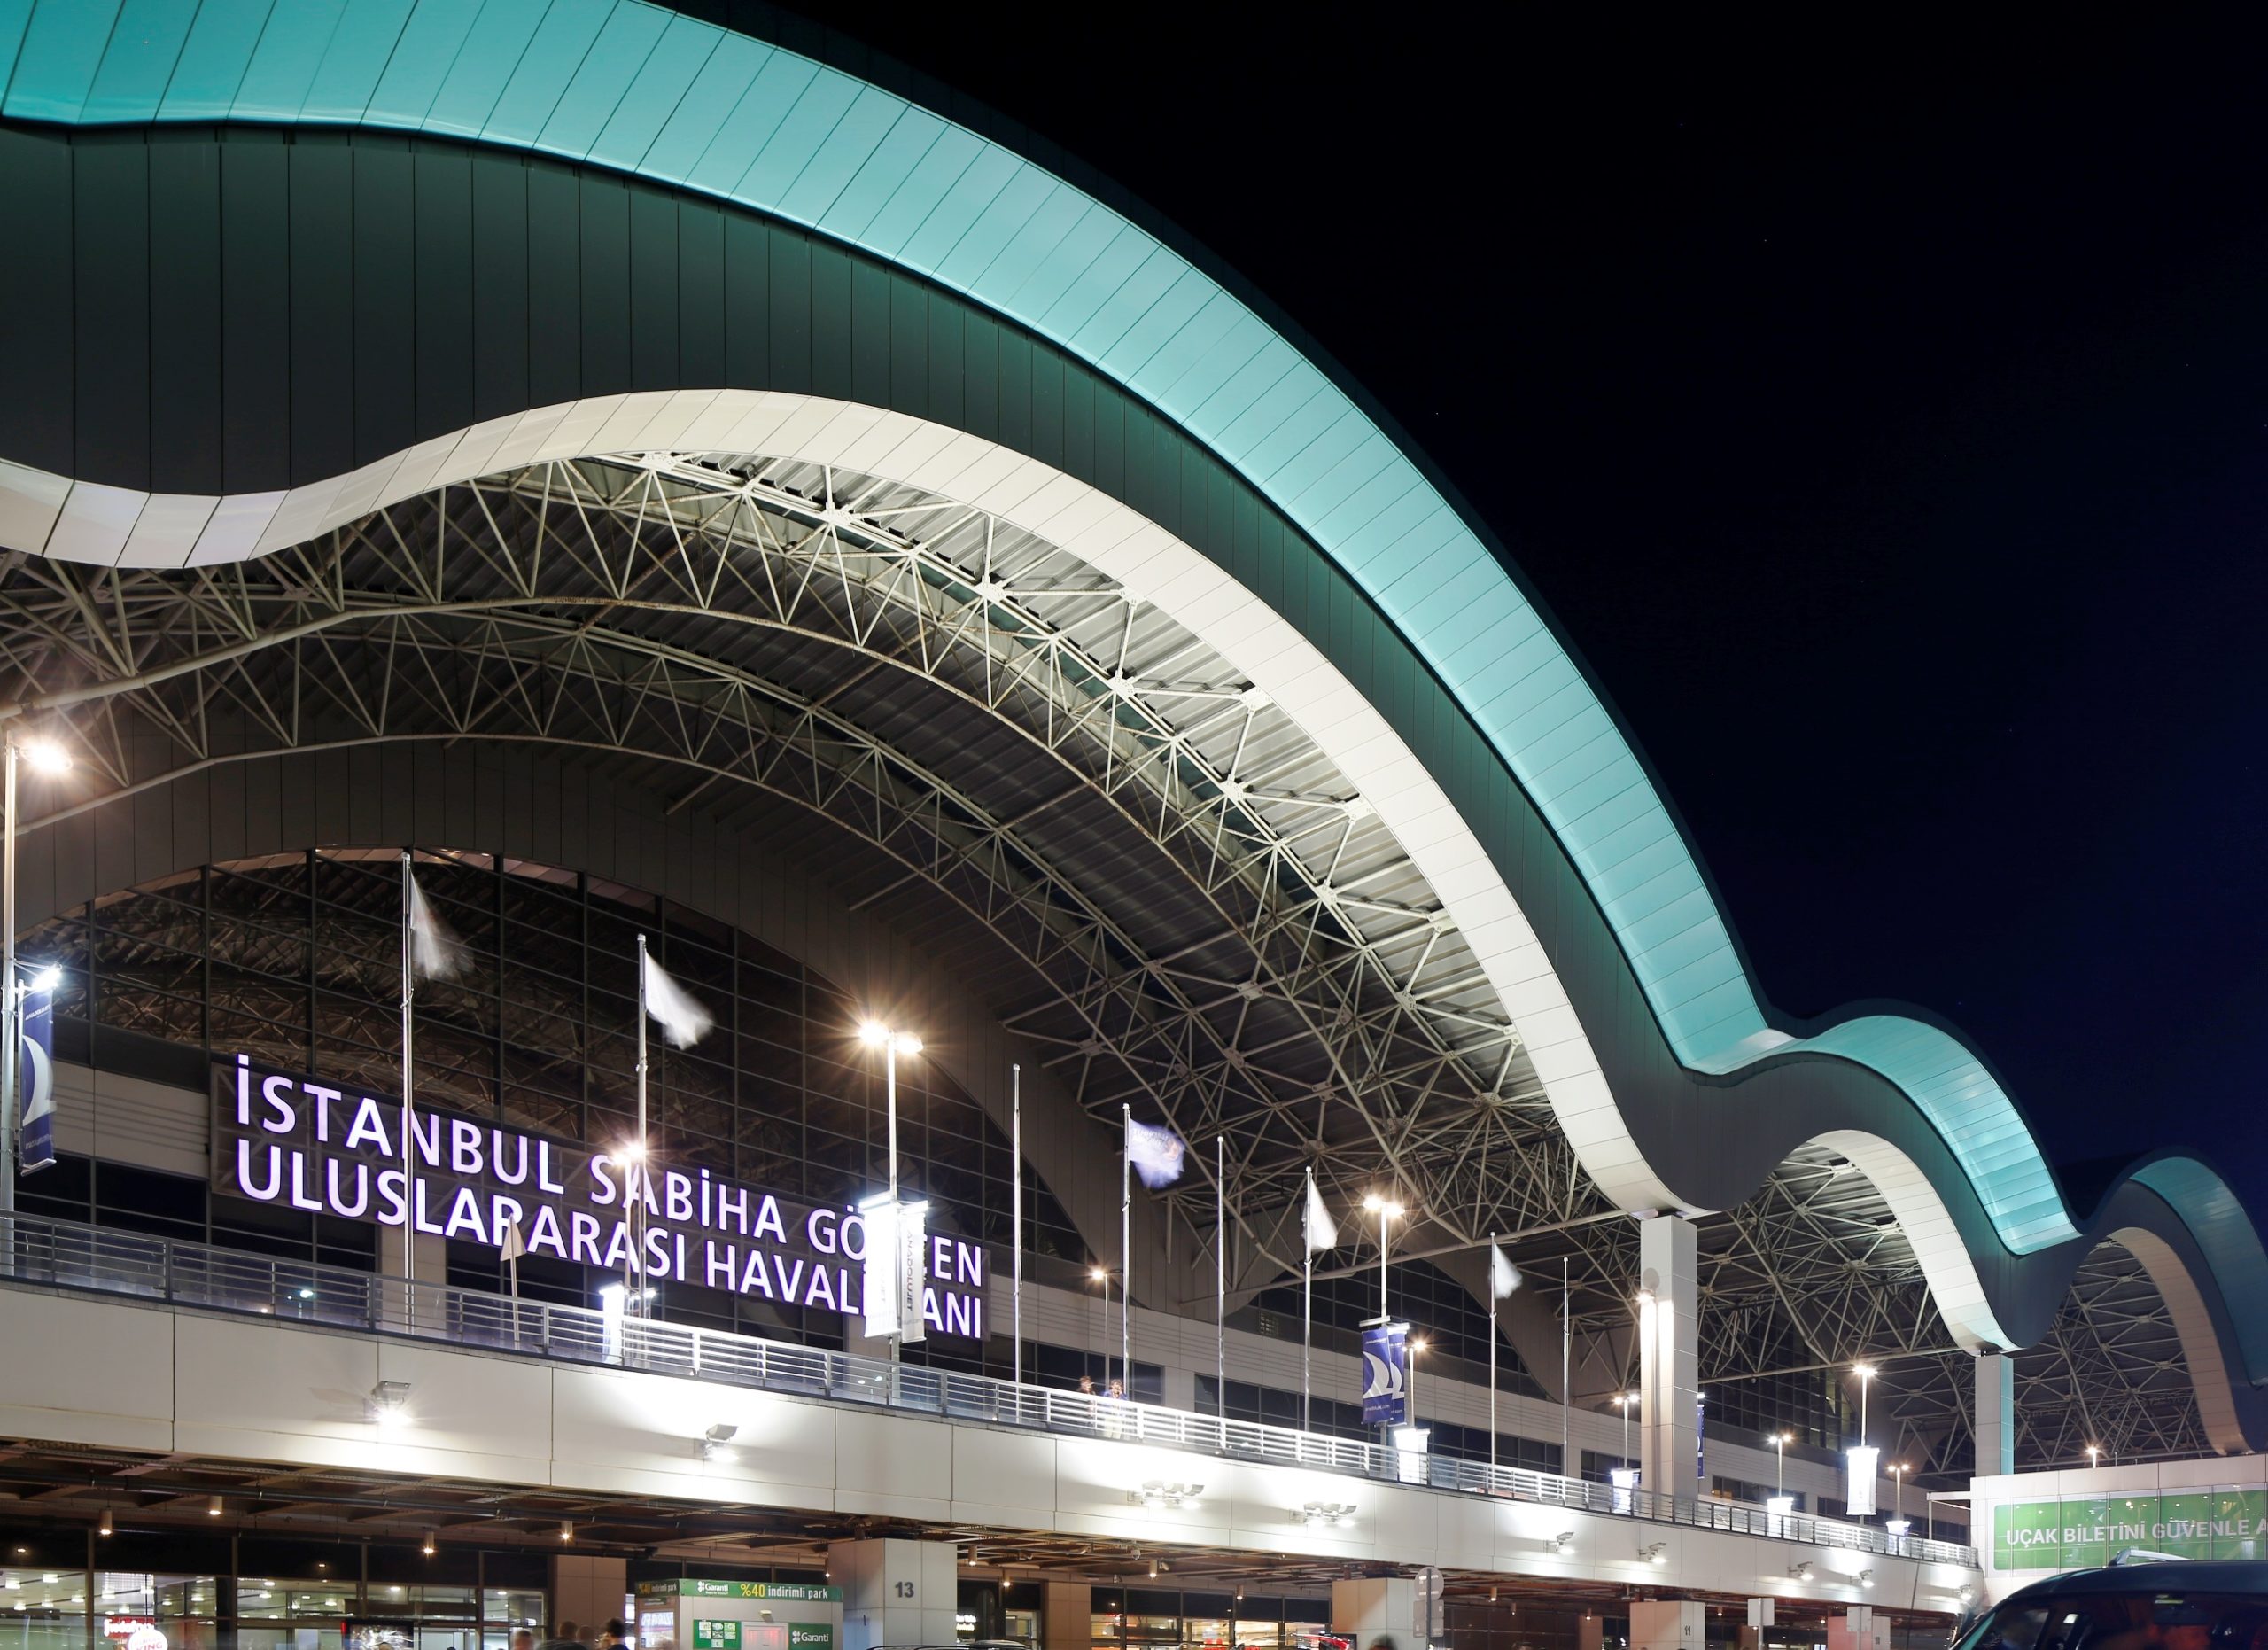 İstanbul Sabiha Gökçen Havalimanı